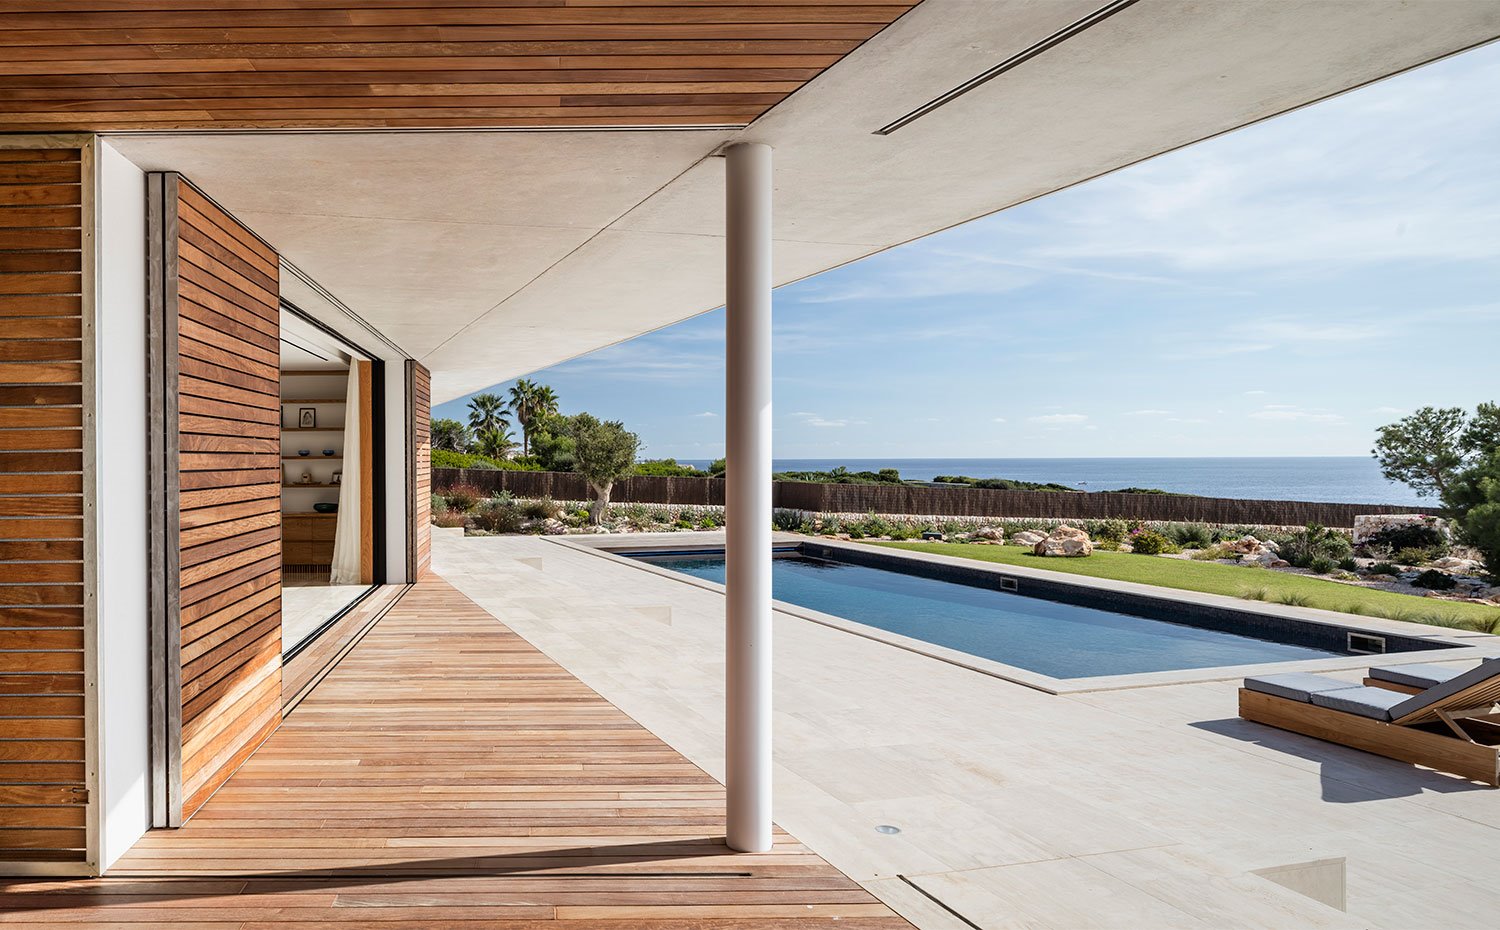 Apertura del interior hacia la terraza exterior con piscina rectangular y tumbonas de madera